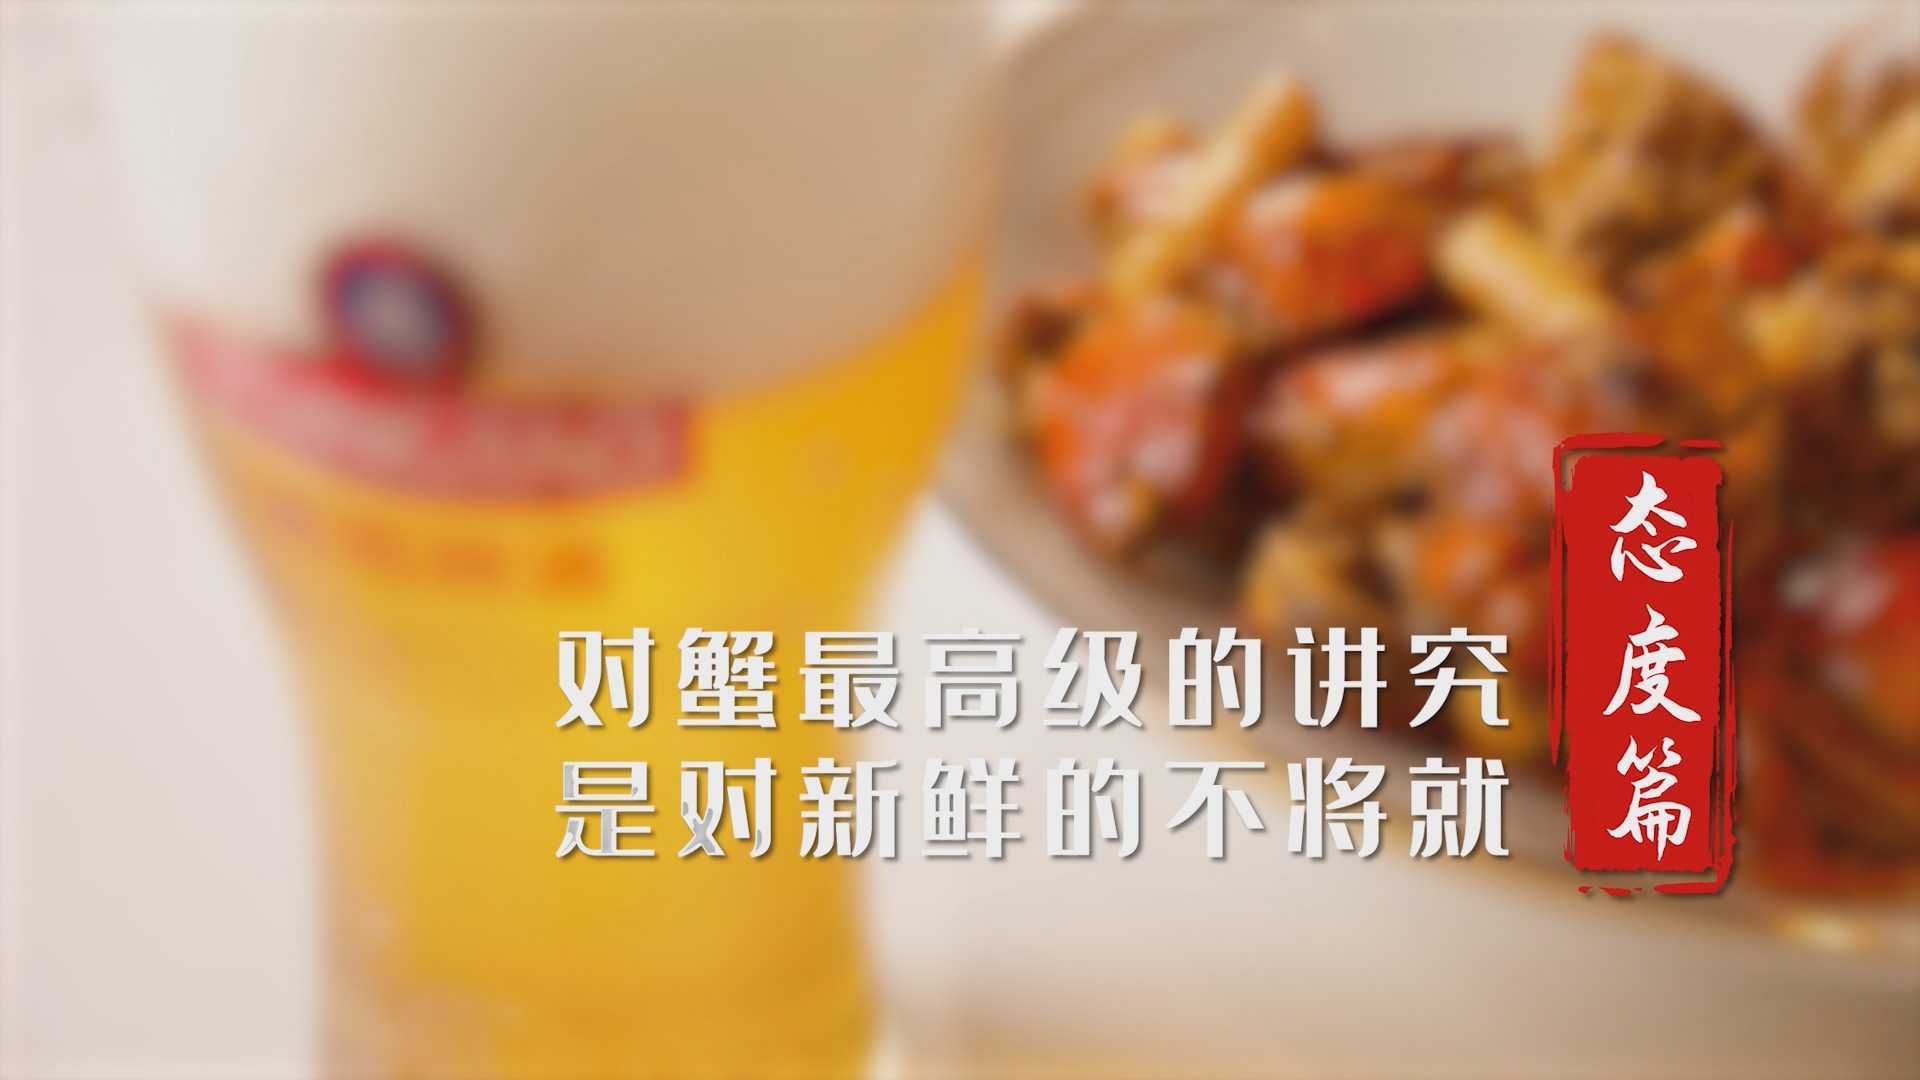 青岛啤酒原浆探鲜季-大闸蟹美食短片